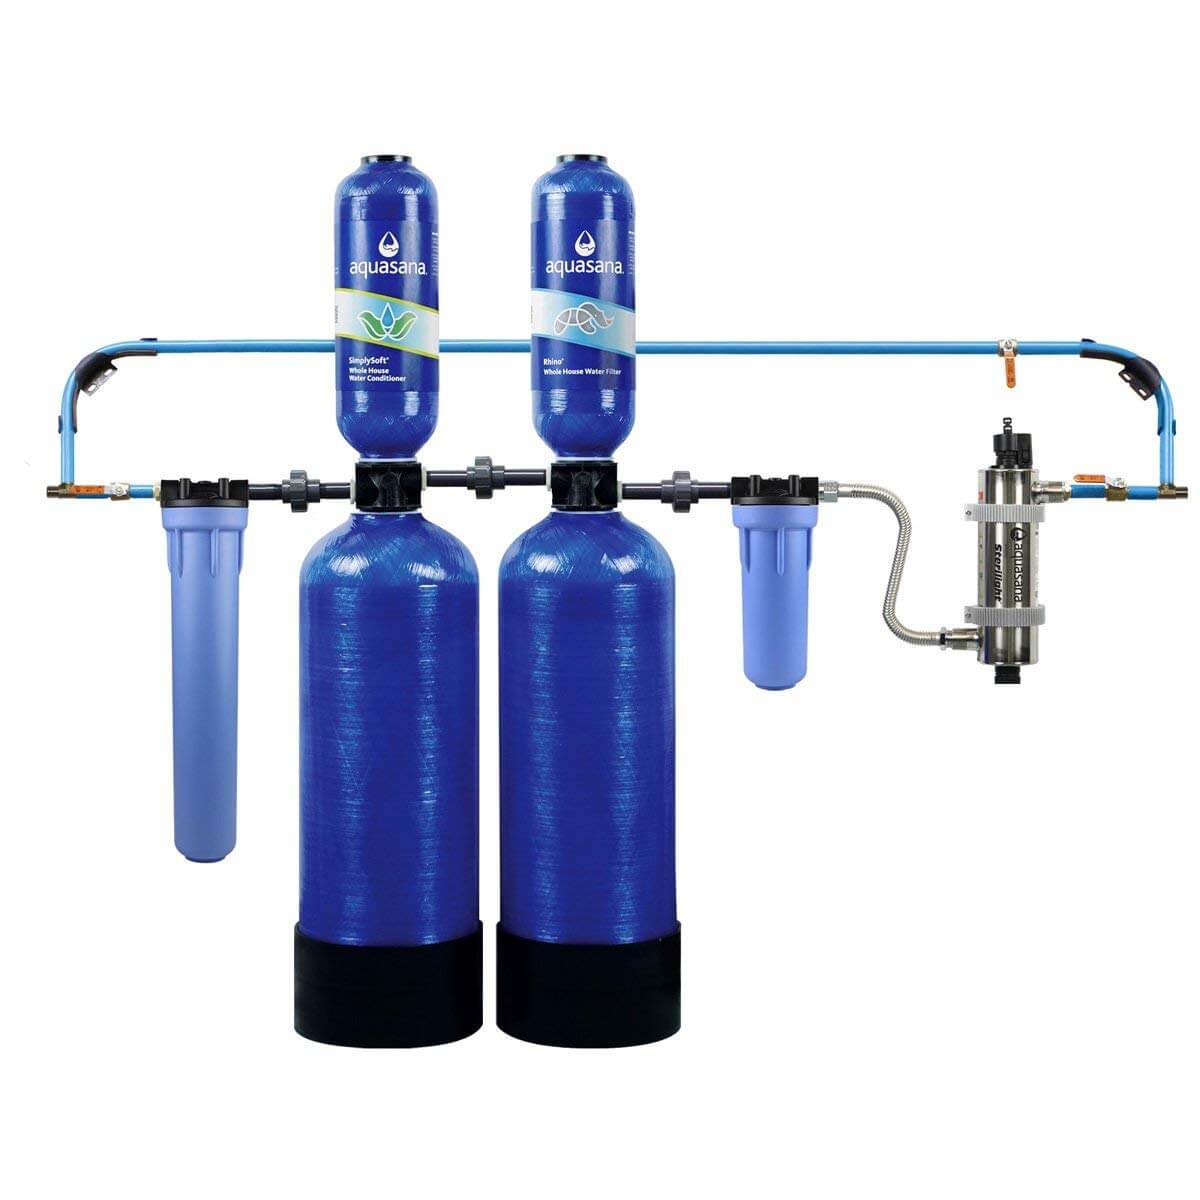 Фильтры для очистки воды от извести. Aquasana фильтр для воды. Фильтр для водоподготовки воды из скважины. Фильтры для очистки воды из скважины Сантехкомплект. Фильтр на скважину для воды.